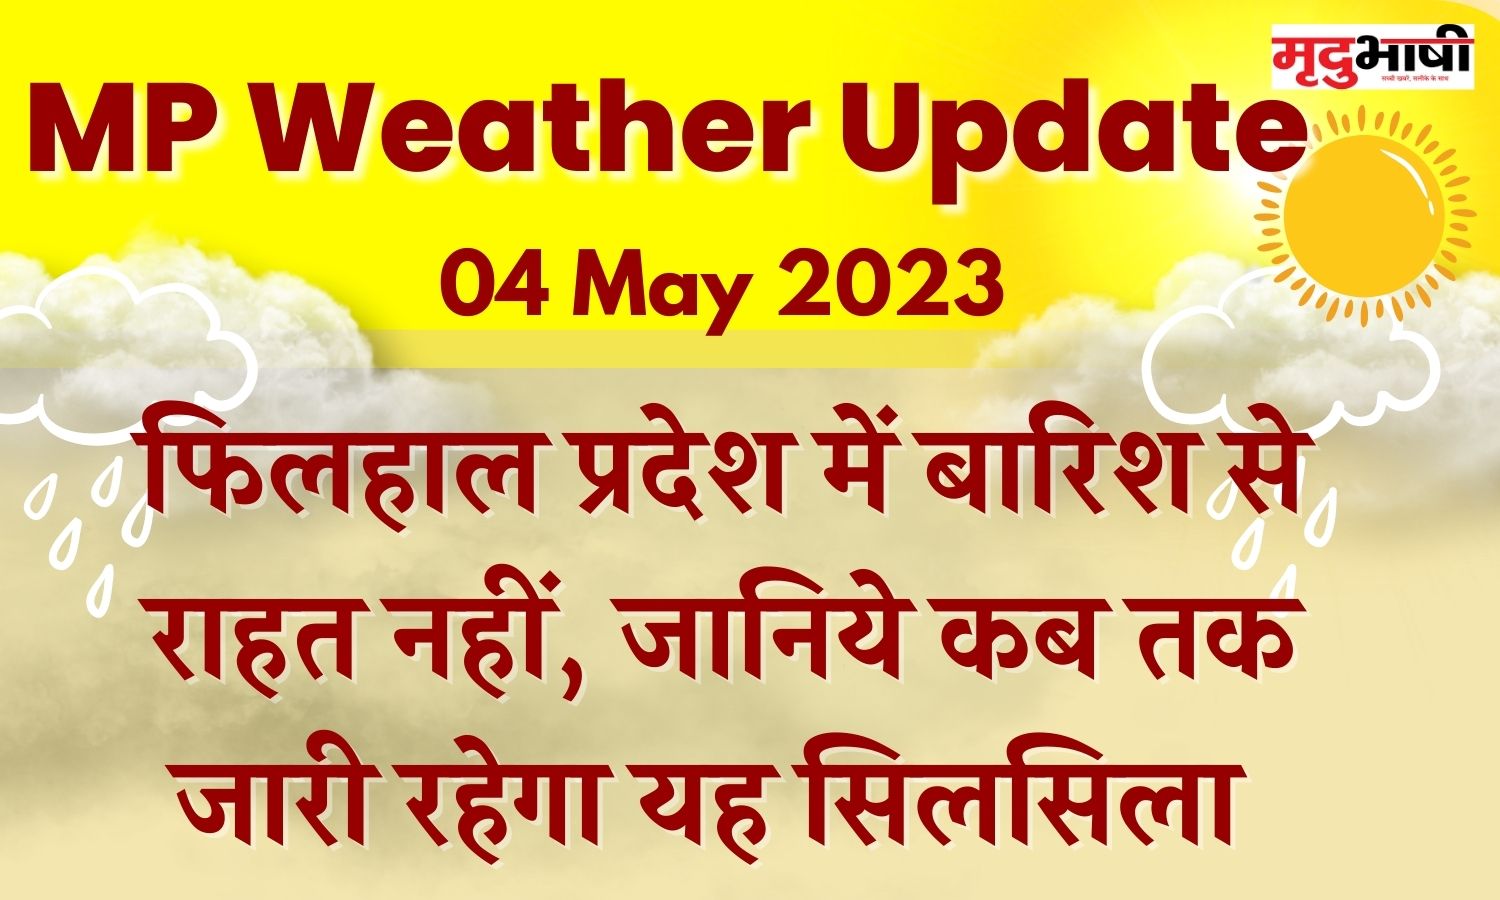 MP Weather Update: फिलहाल प्रदेश में बारिश से राहत नहीं, जानिये कब तक जारी रहेगा यह सिलसिला